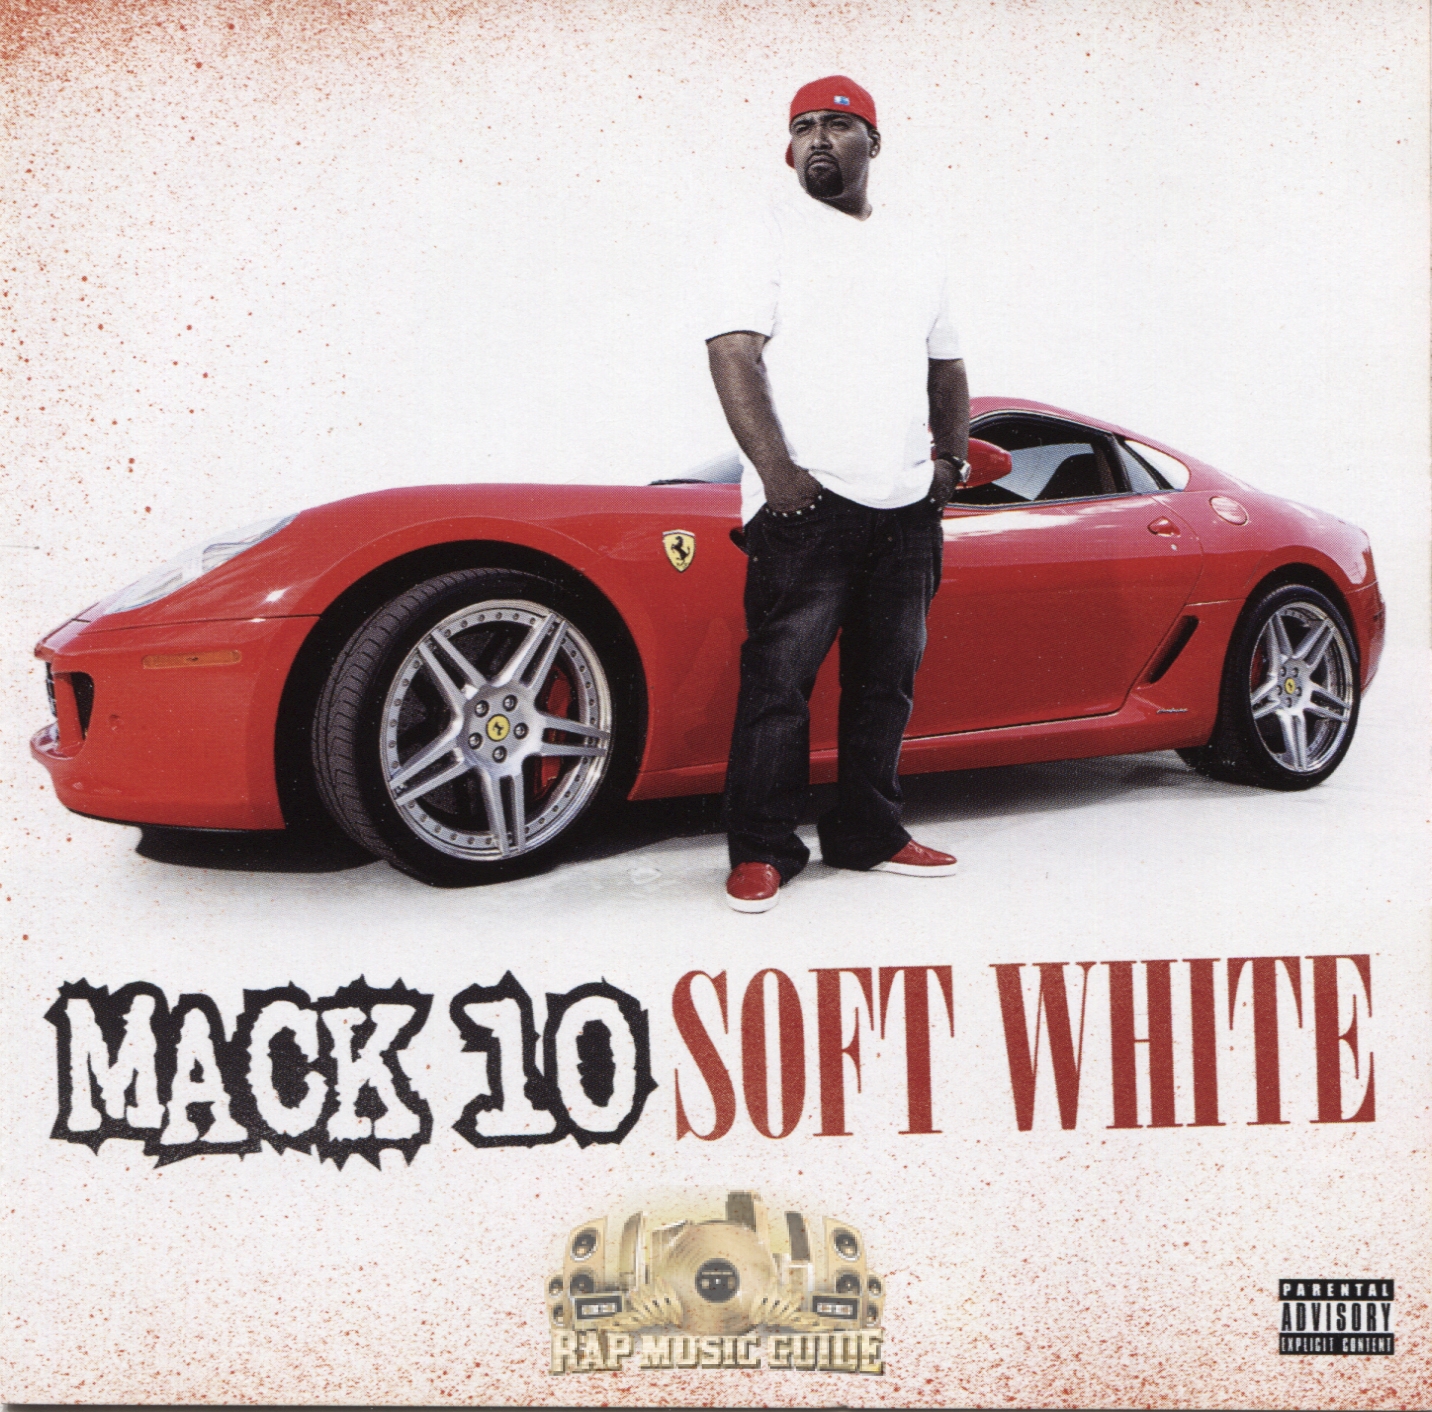 Mack 10 - Soft White: CD | Rap Music Guide